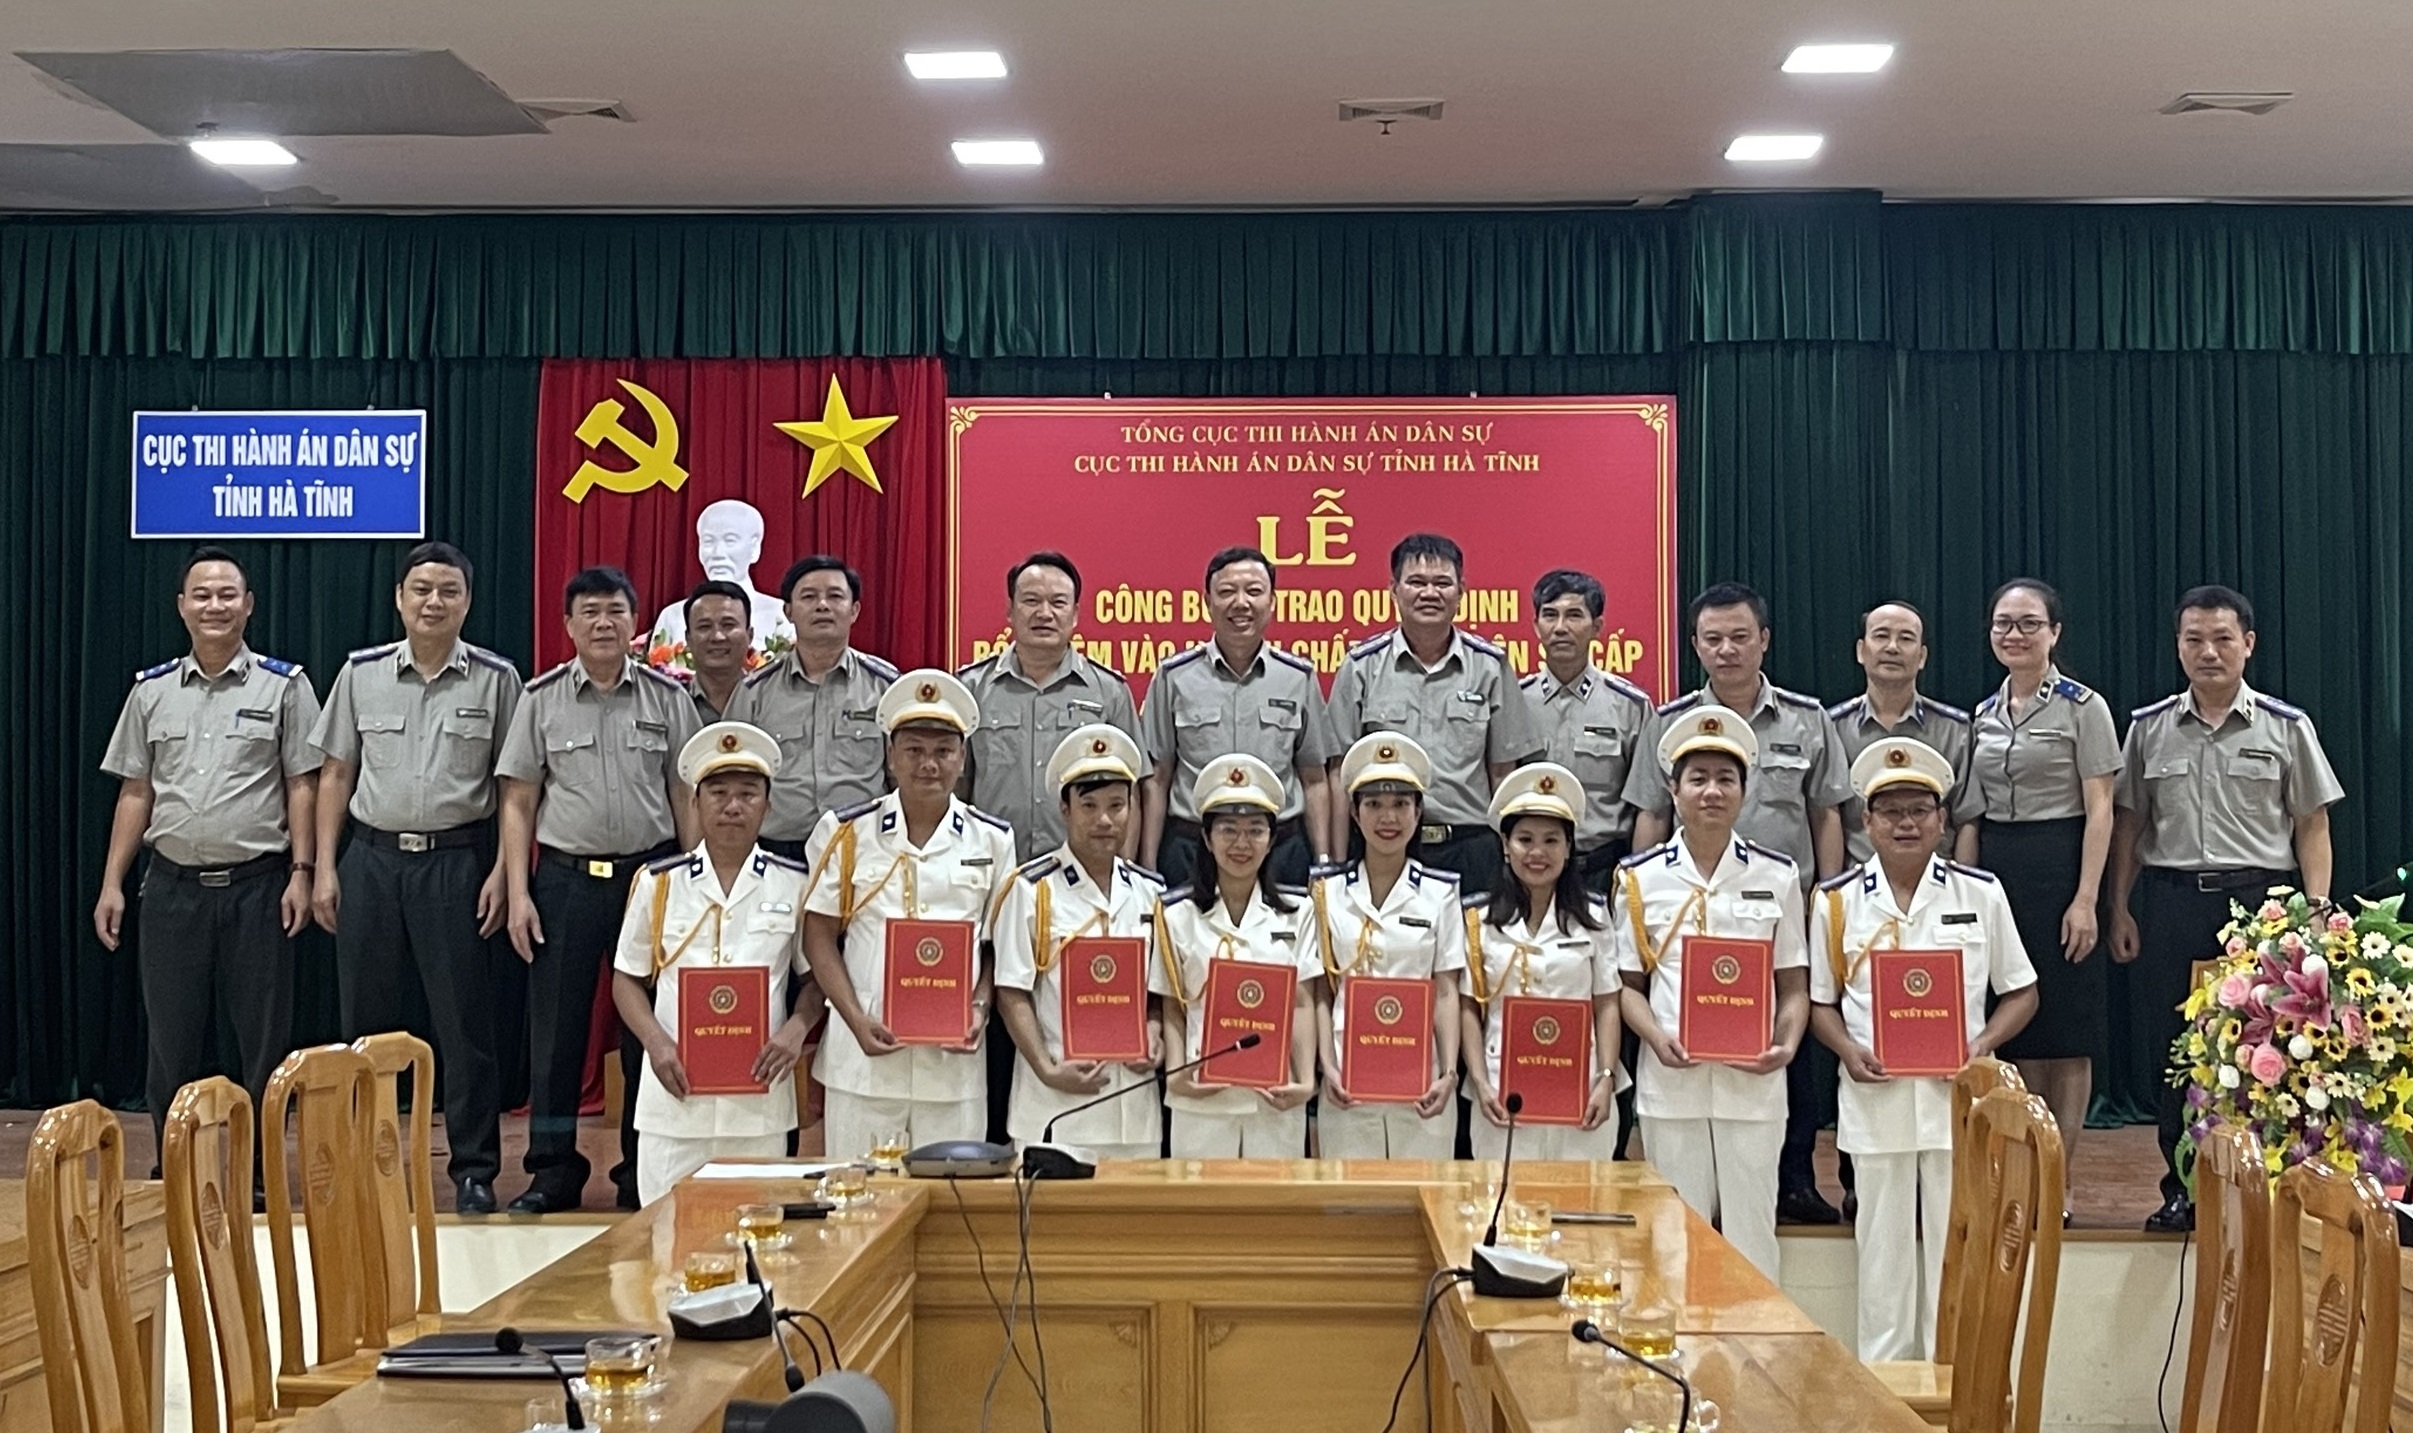 Cục THADS tỉnh Hà Tĩnh tổ chức Lễ công bố và trao quyết định bổ nhiệm ngạch Chấp hành viên sơ cấp